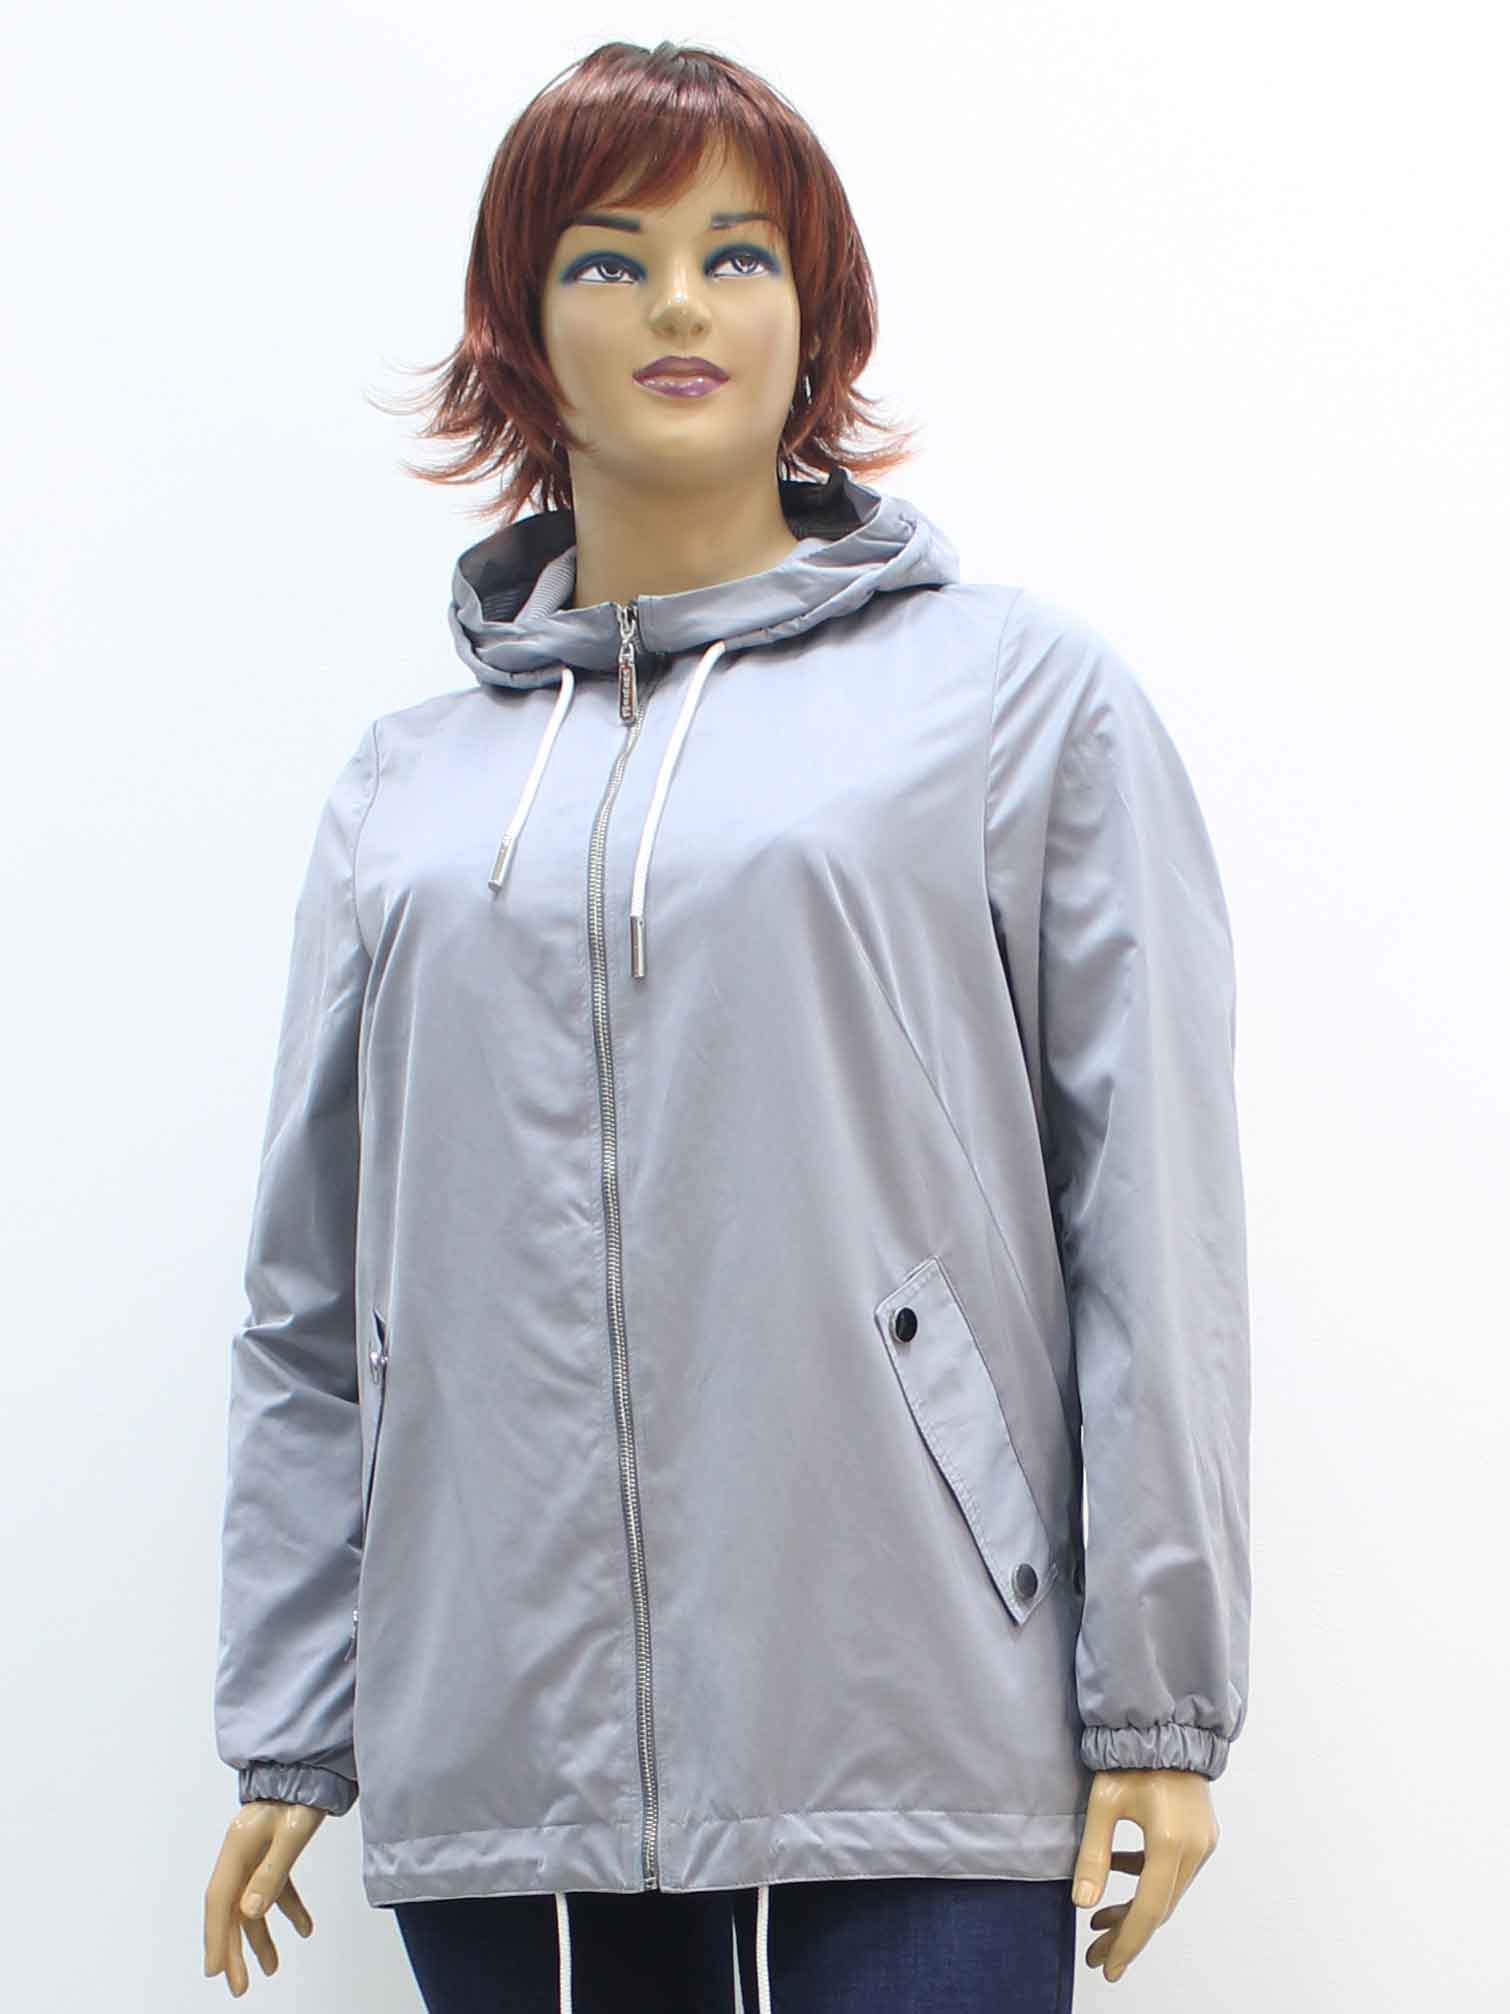 Куртка легкая женская из хлопка с капюшоном большого размера. Магазин «Пышная Дама», Луганск.